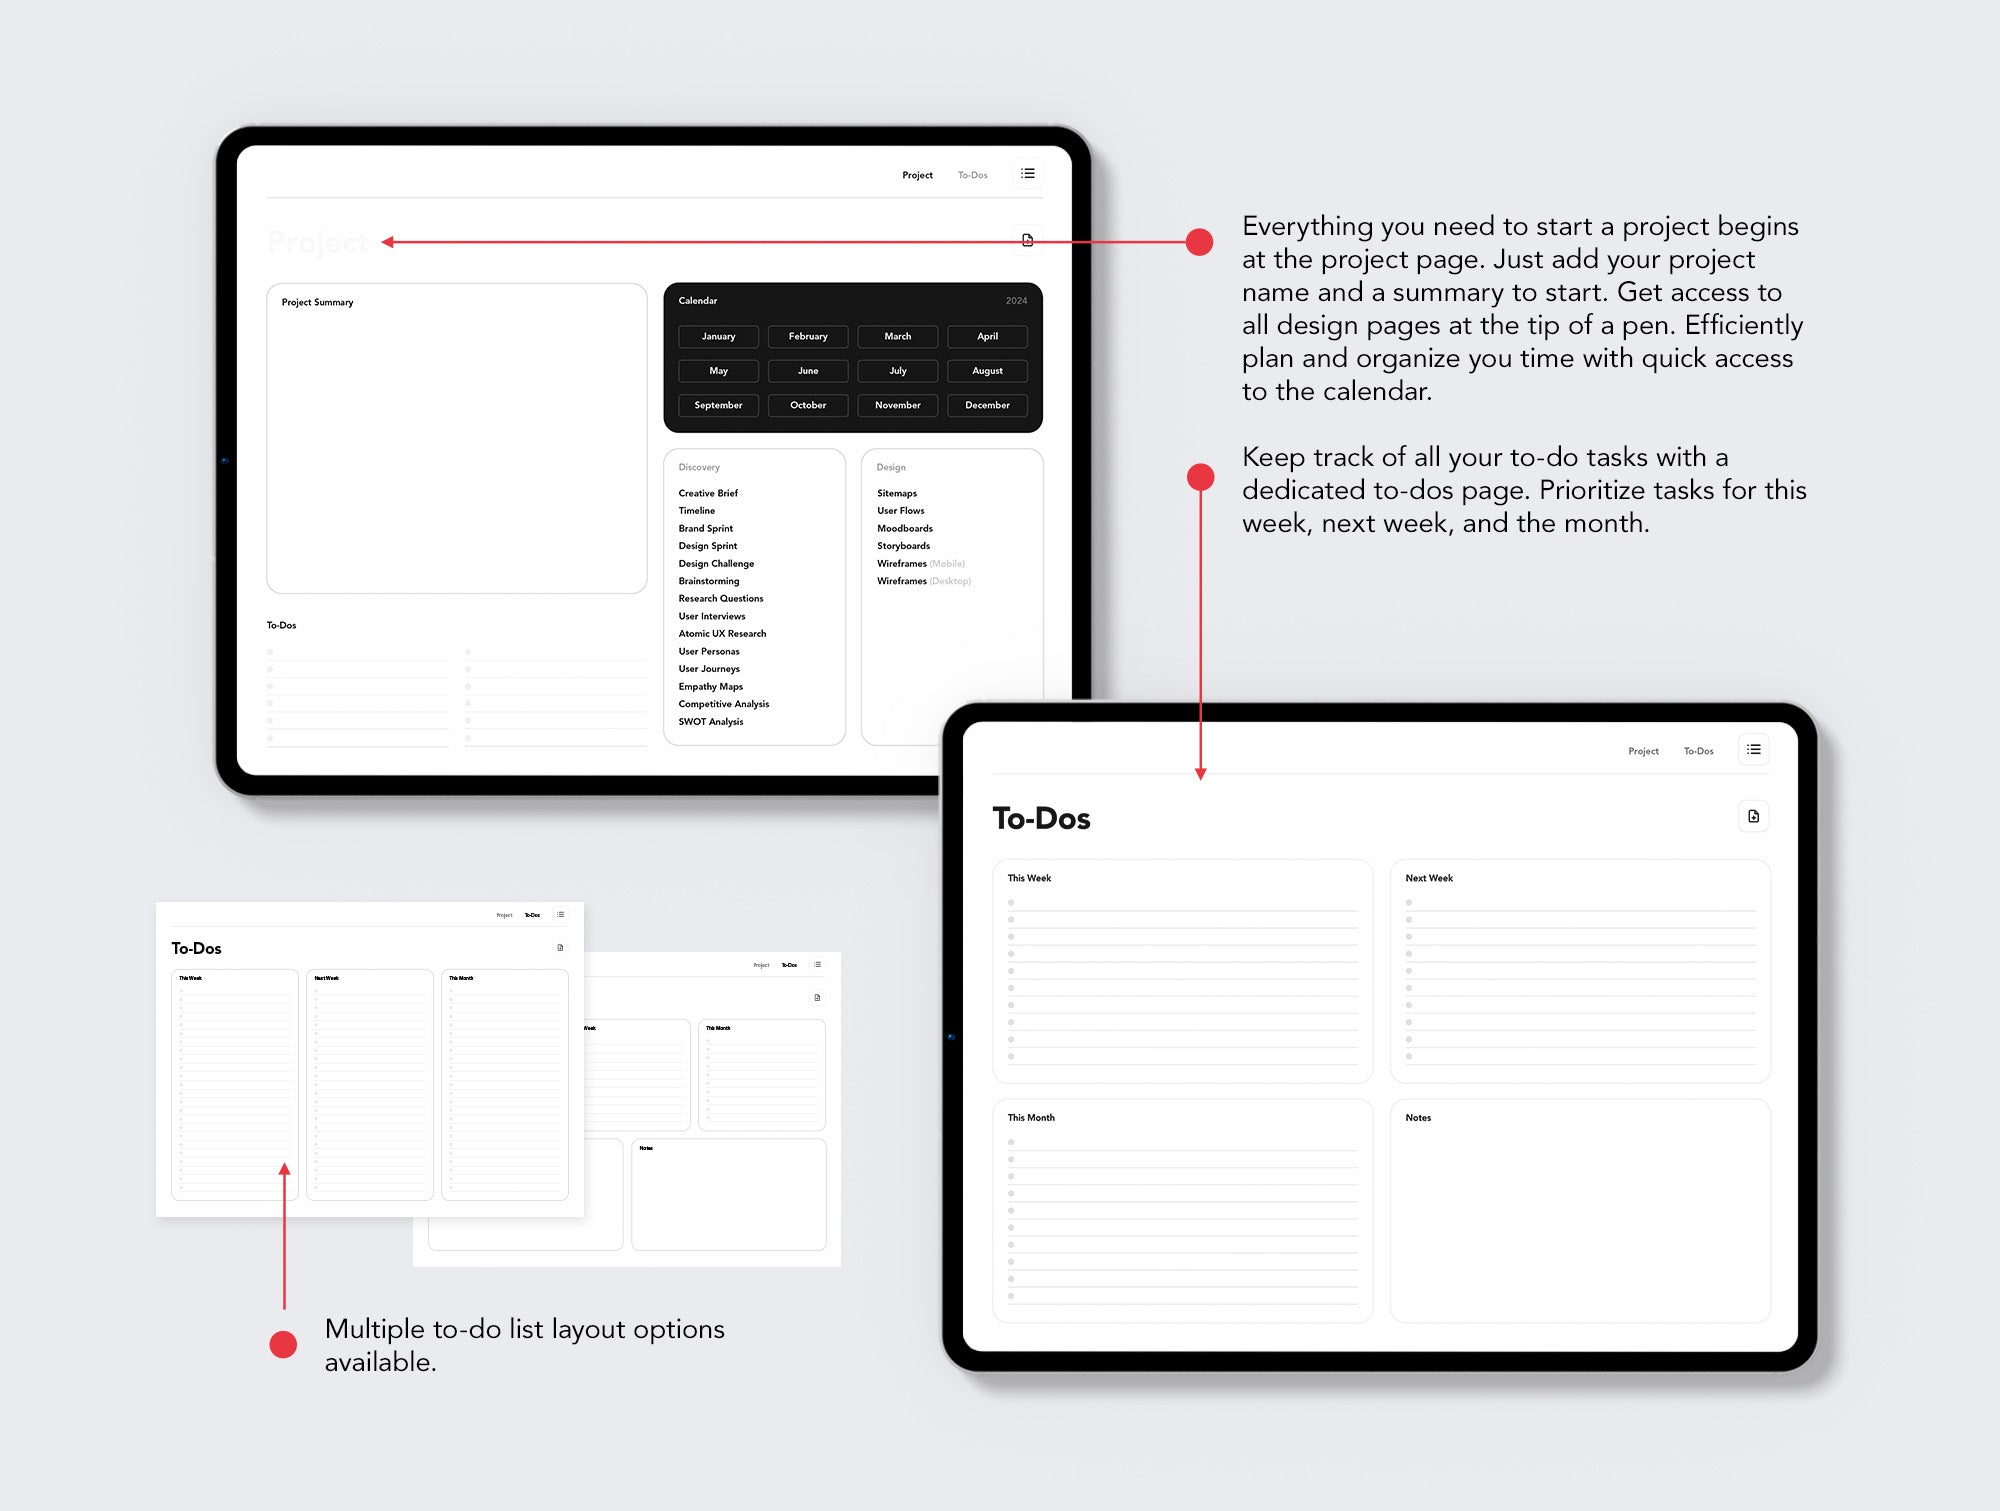 Designer+ Undated Digital Workbook & Planner